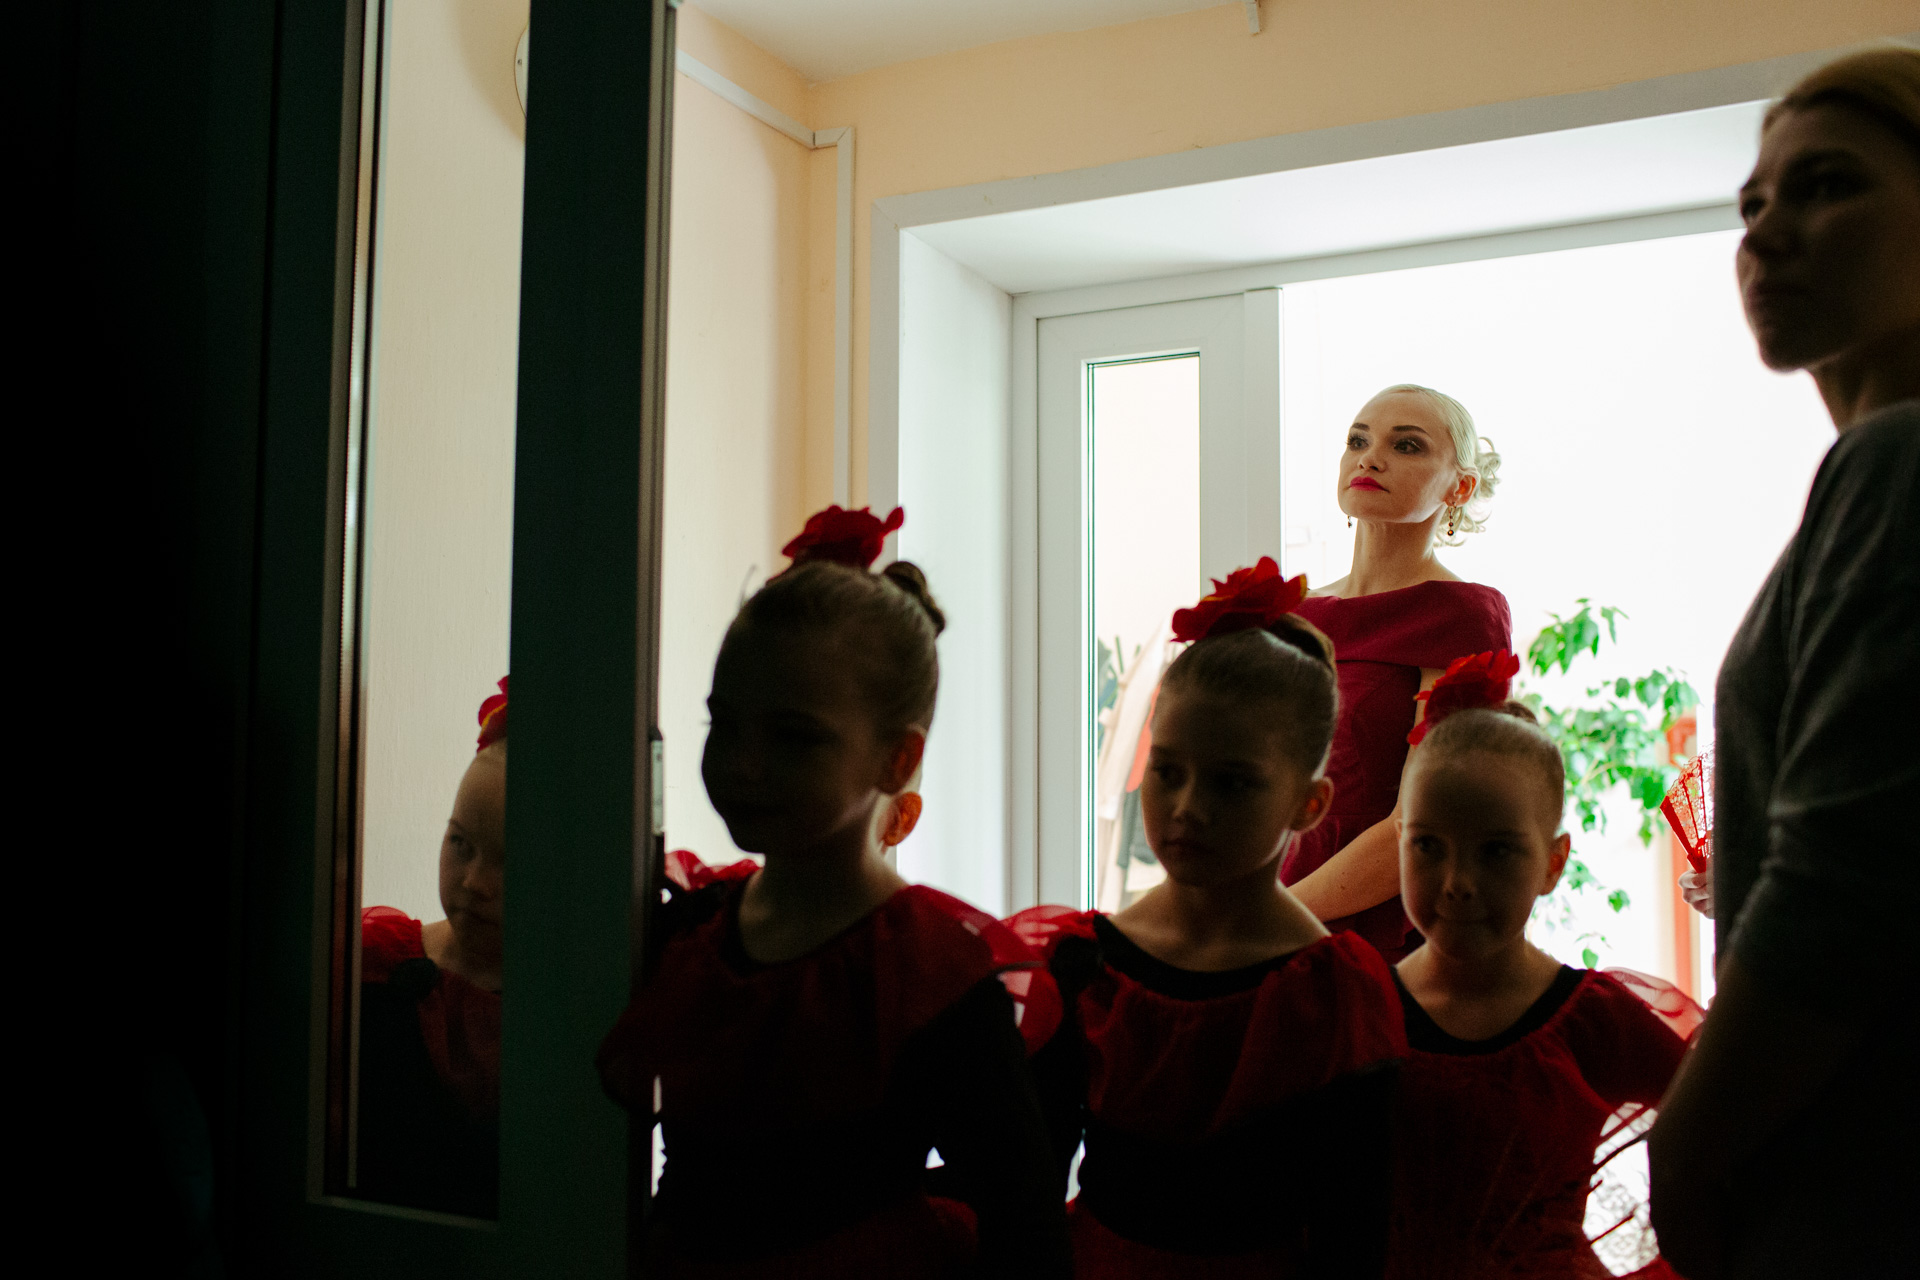 Руководитель Студии классического балета Татьяна Золотарева смотрит выступление детей. Девочки из младшей группы уже переоделись и тоже здесь, всем интересно.